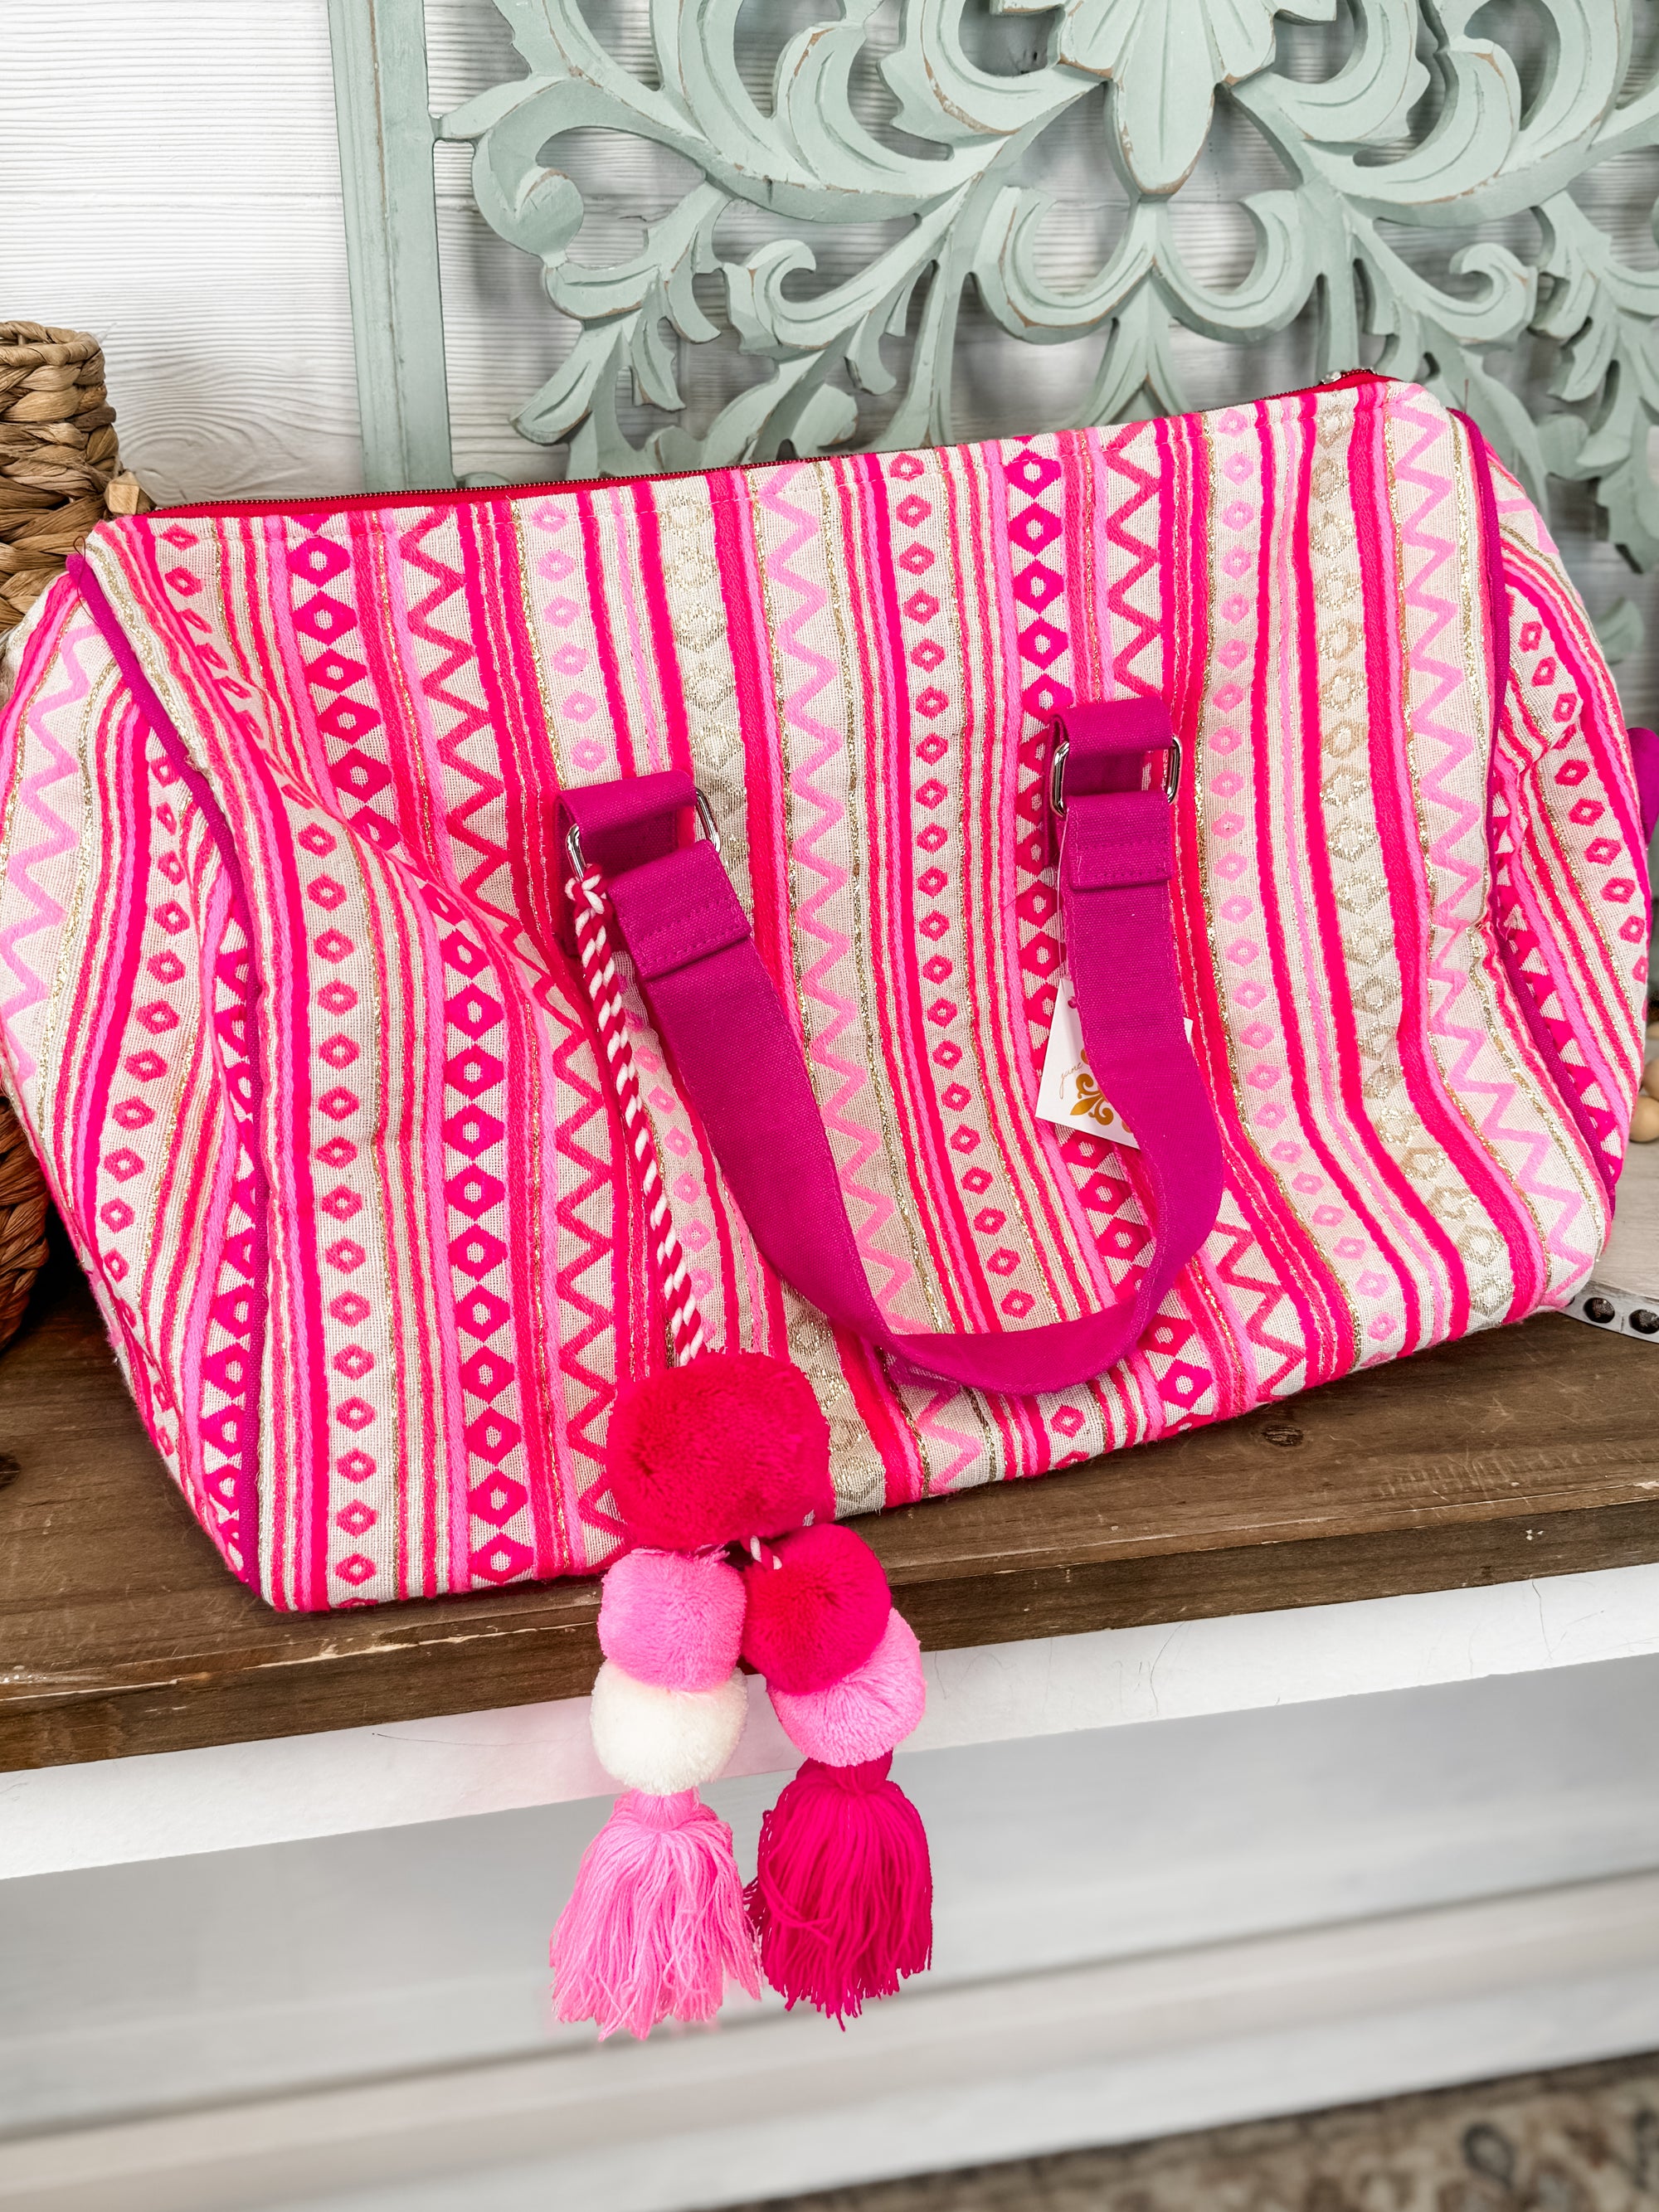 Poppin' Pink! Weekender Bag